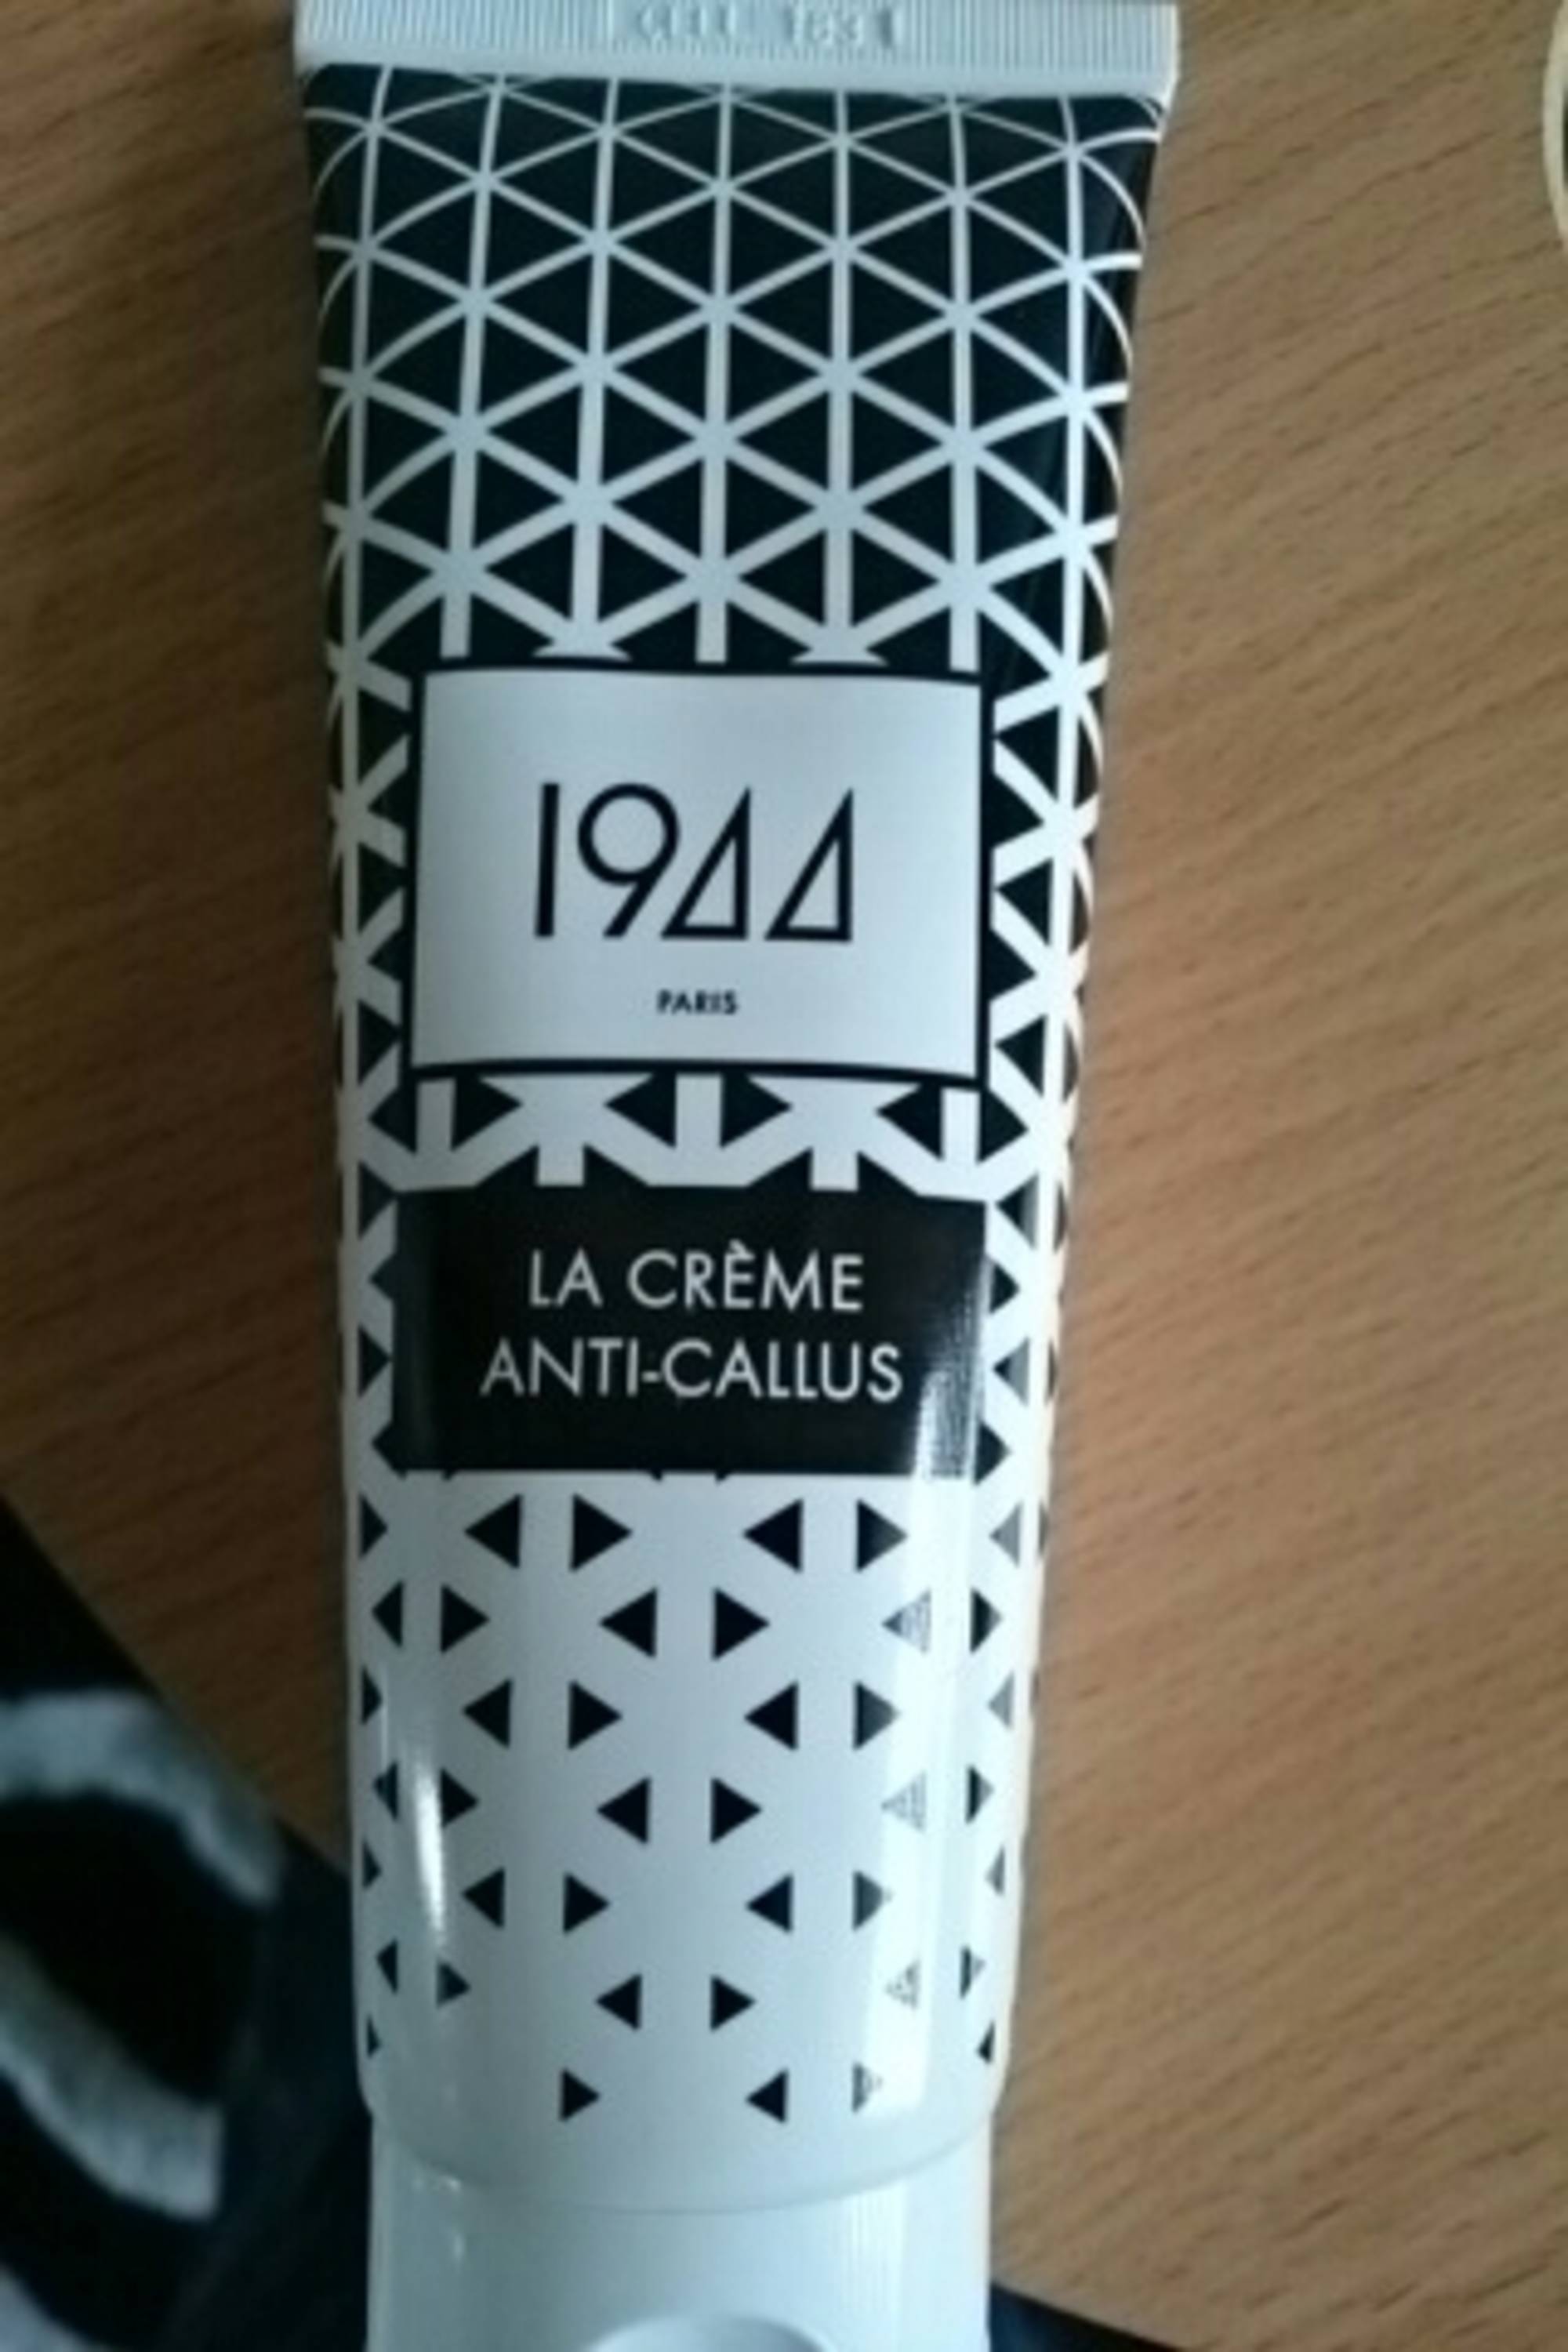 1944 PARIS - La Crème anti-callus